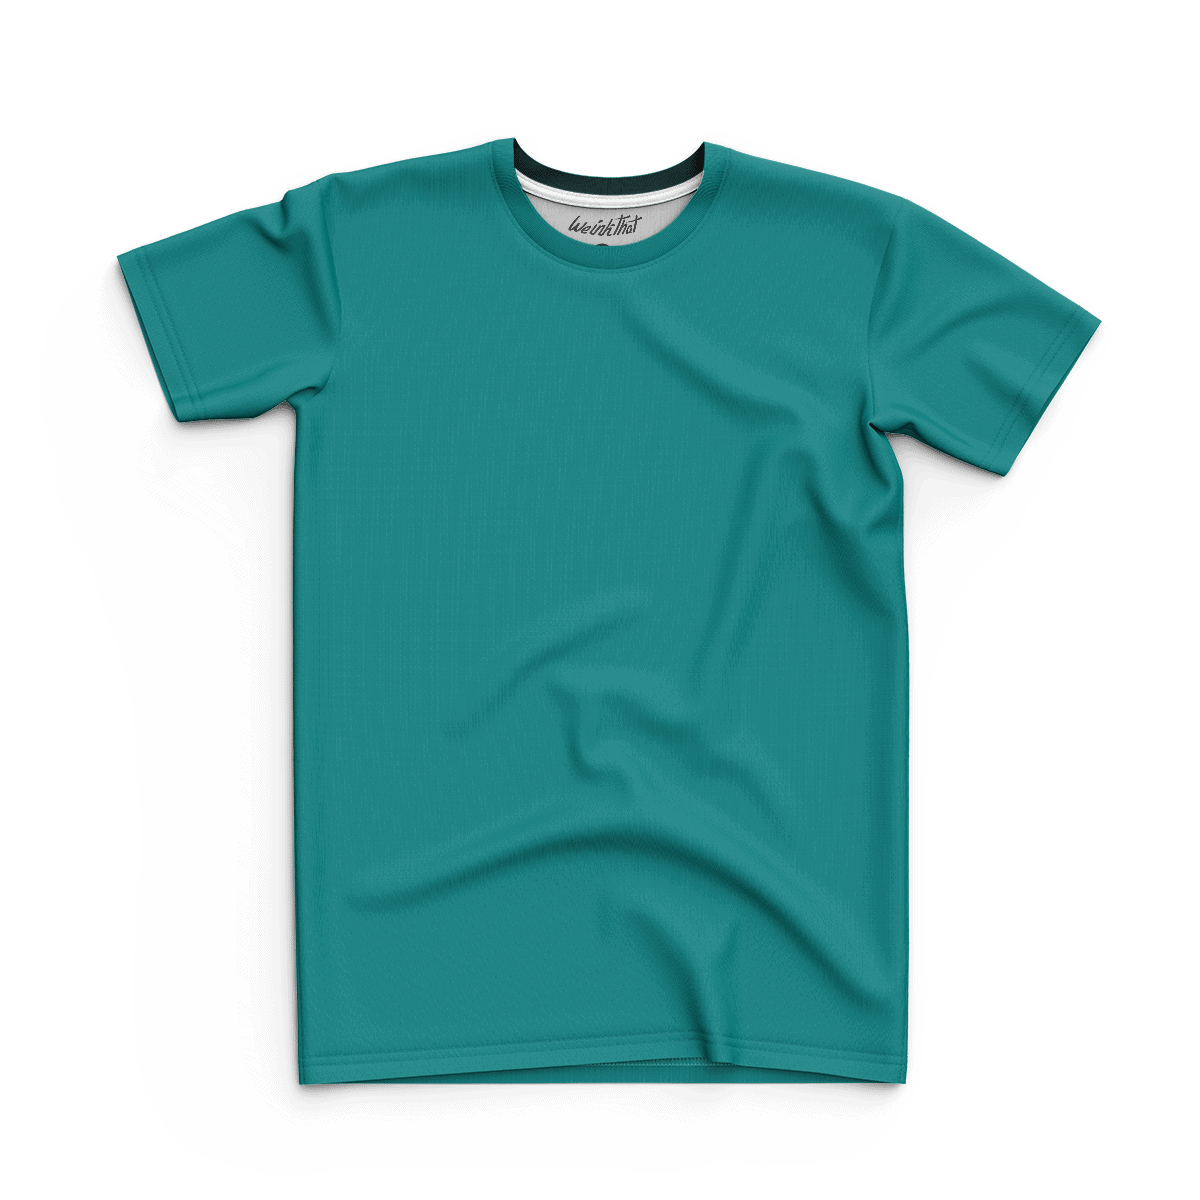 Buy T-Shirt - WeInkThat